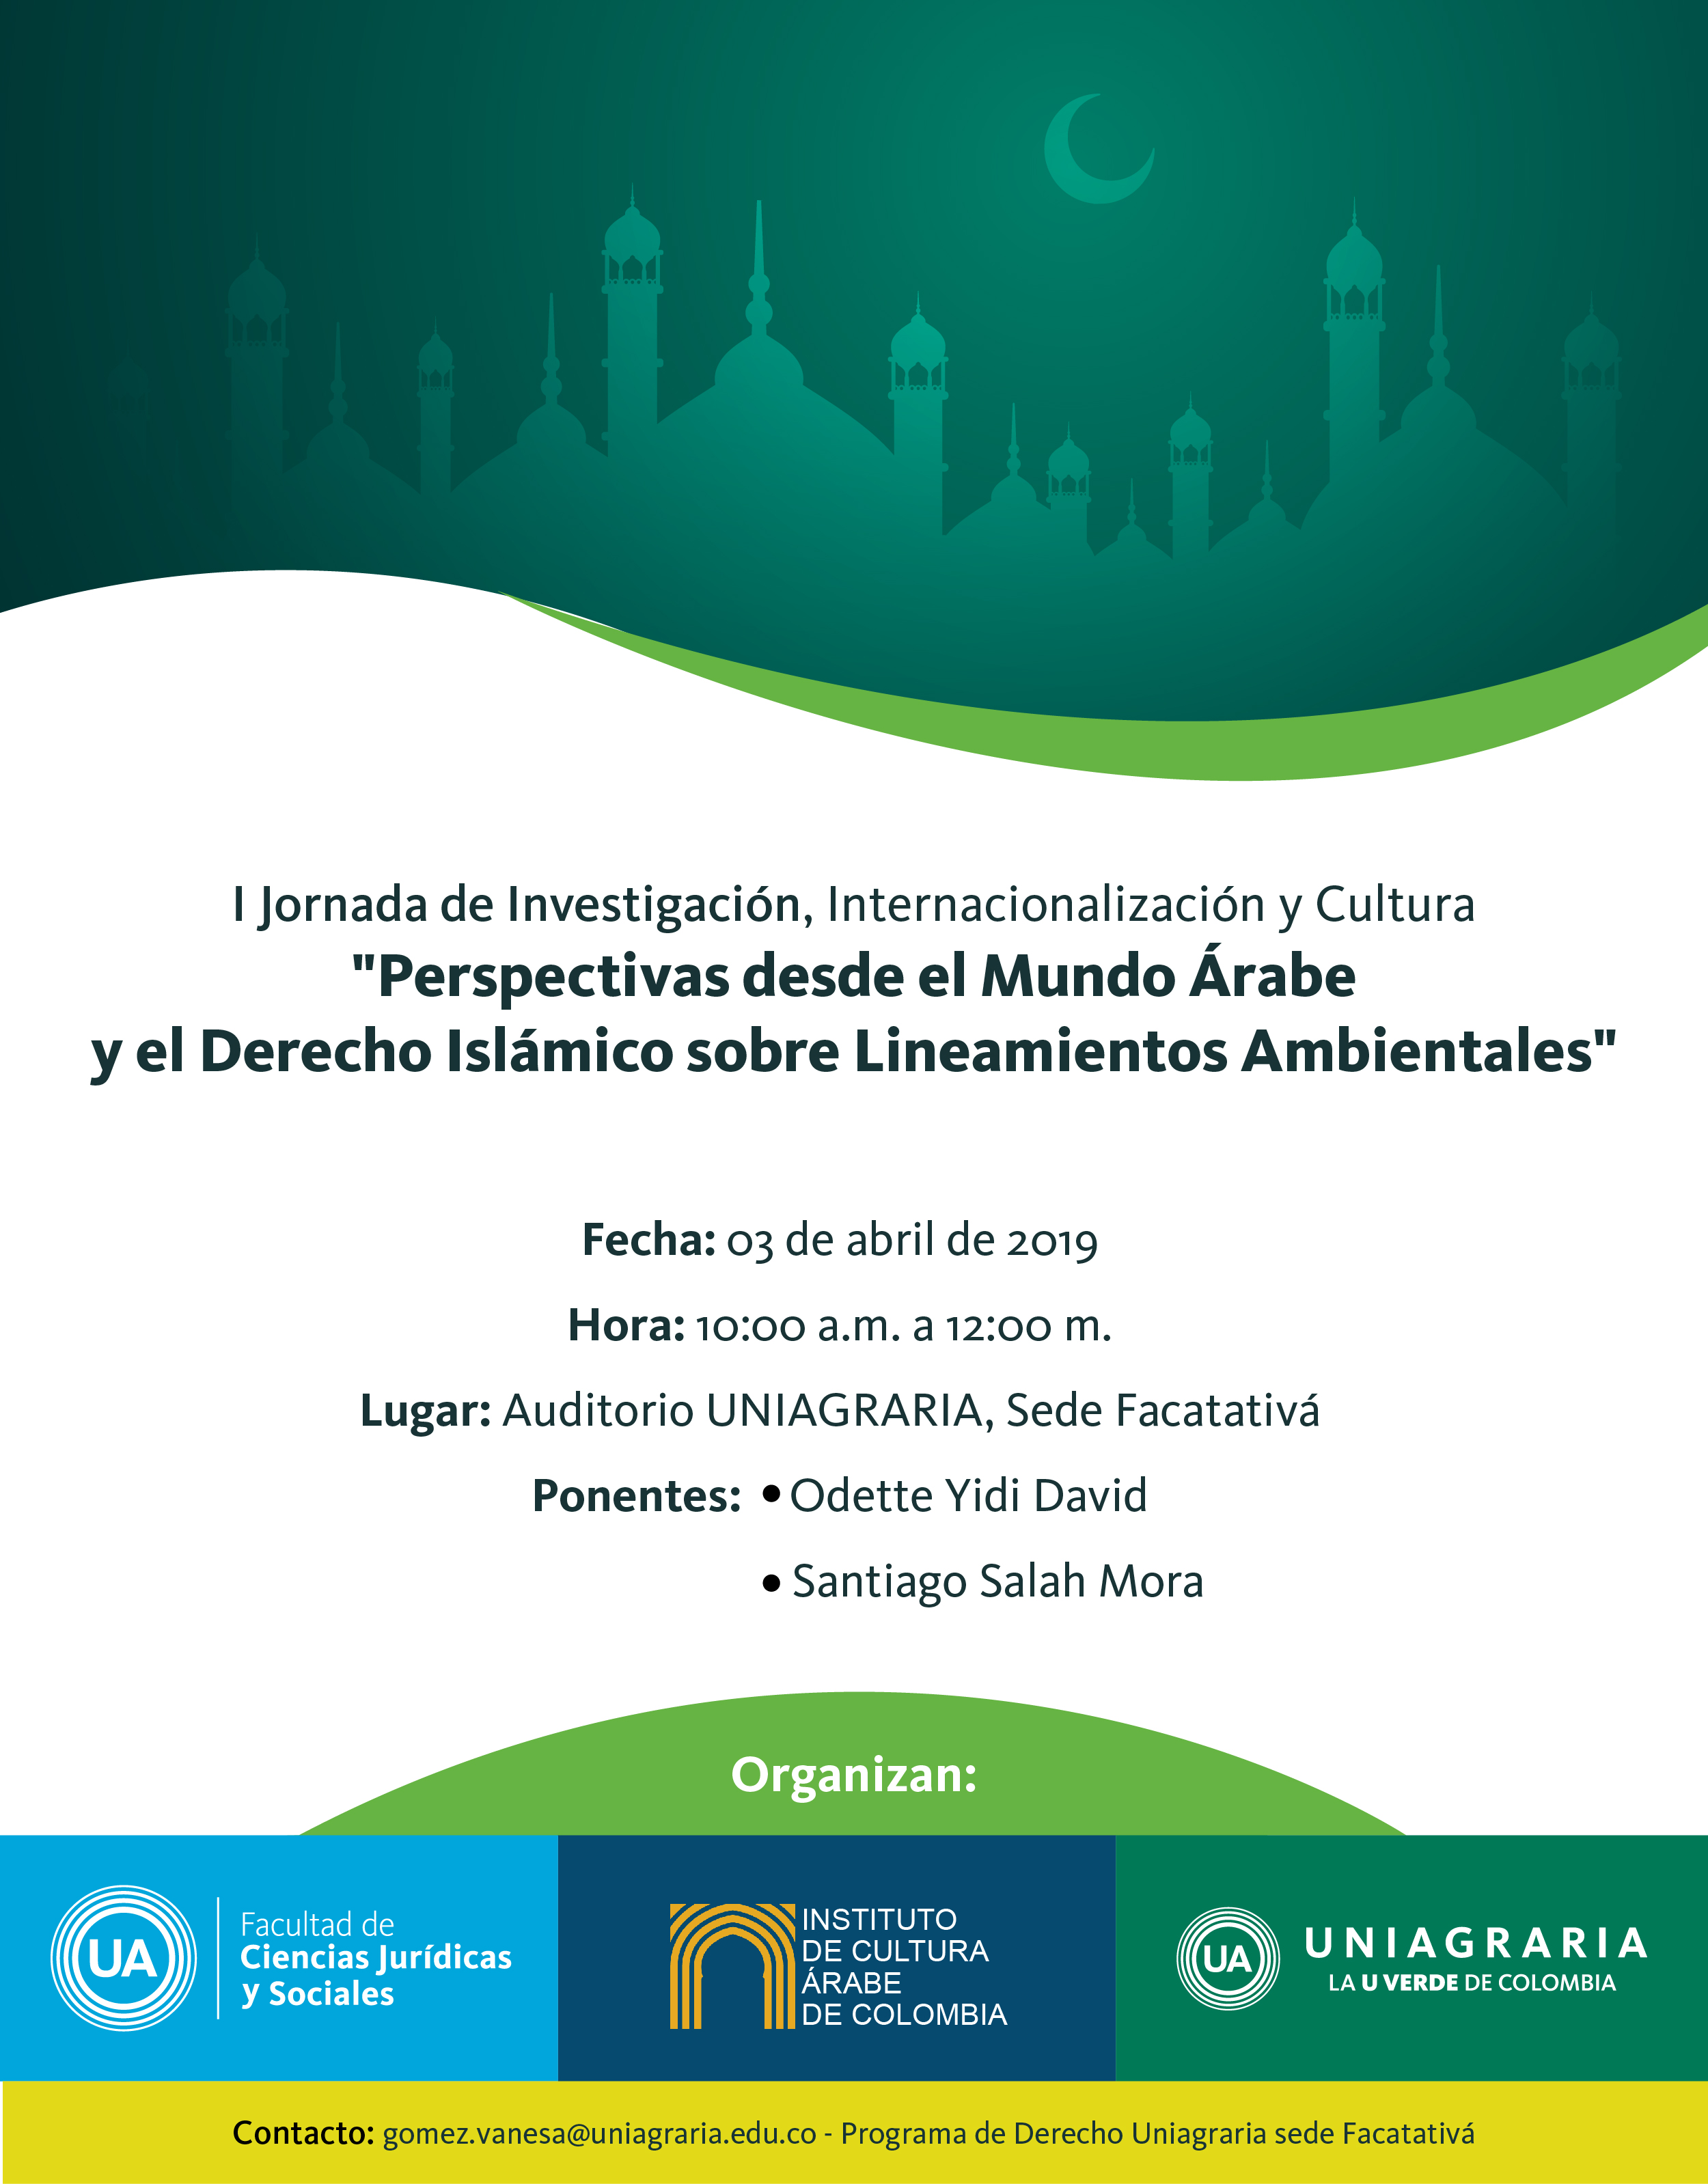 I Jornada de Investigación, Internacionalización y Cultura “Perspectivas desde el Mundo Árabe y el derecho Islámico sobre Lineamientos Ambientales””